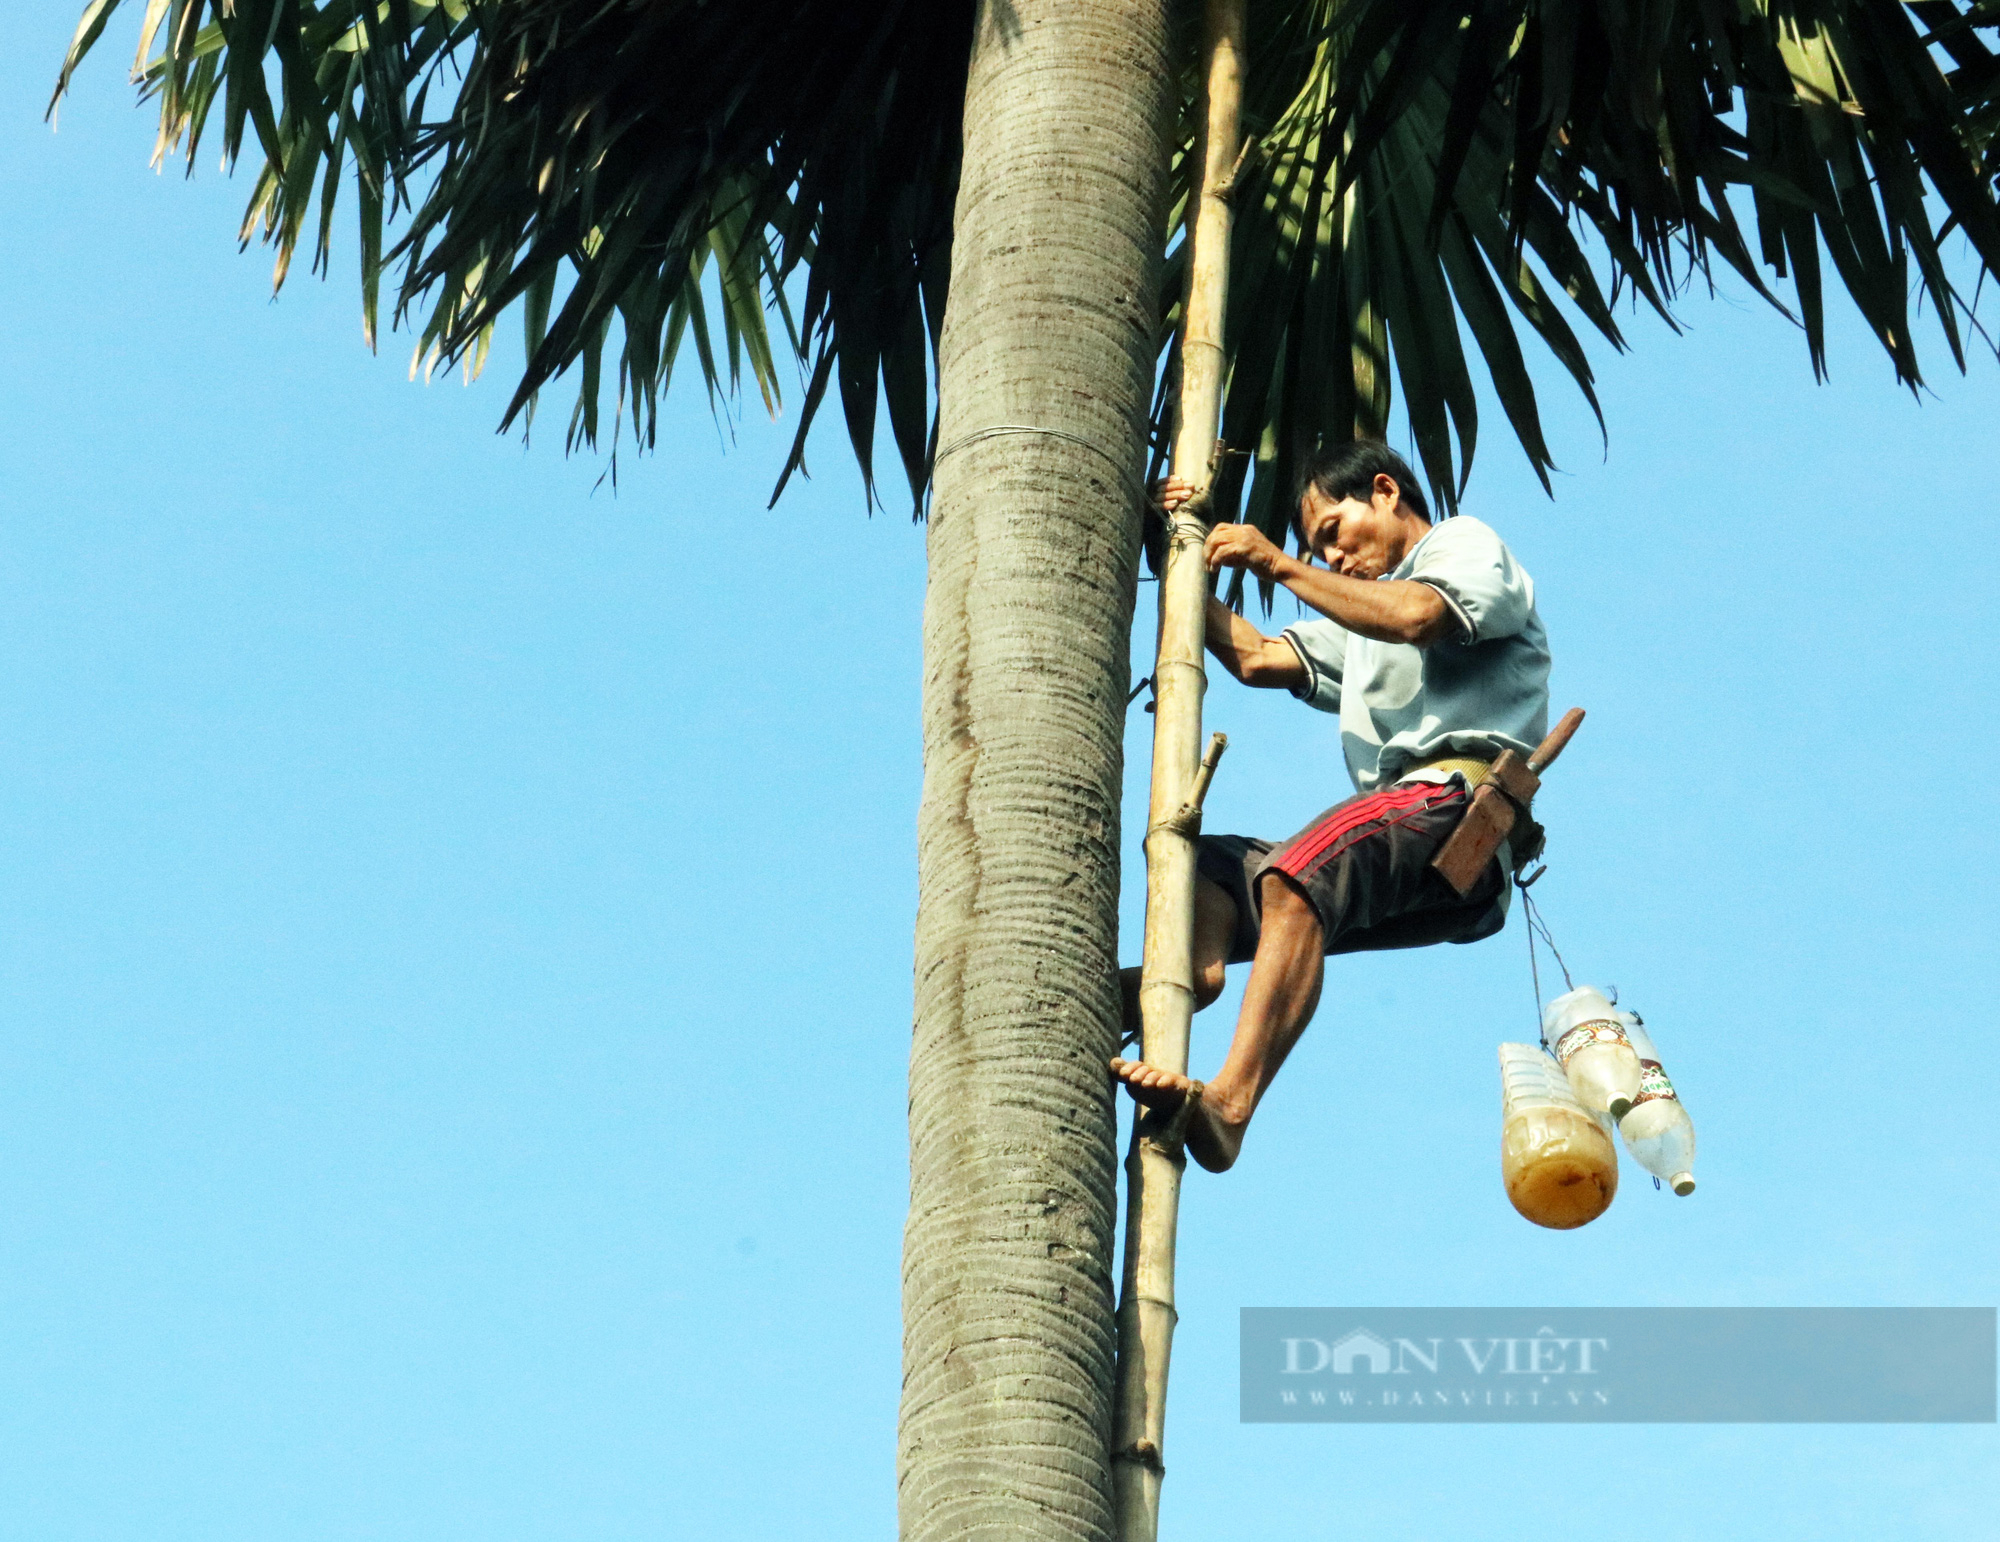 Độc lạ nghề trèo cây lấy thứ nước ngọt như đường của người Khmer ở An Giang - Ảnh 4.